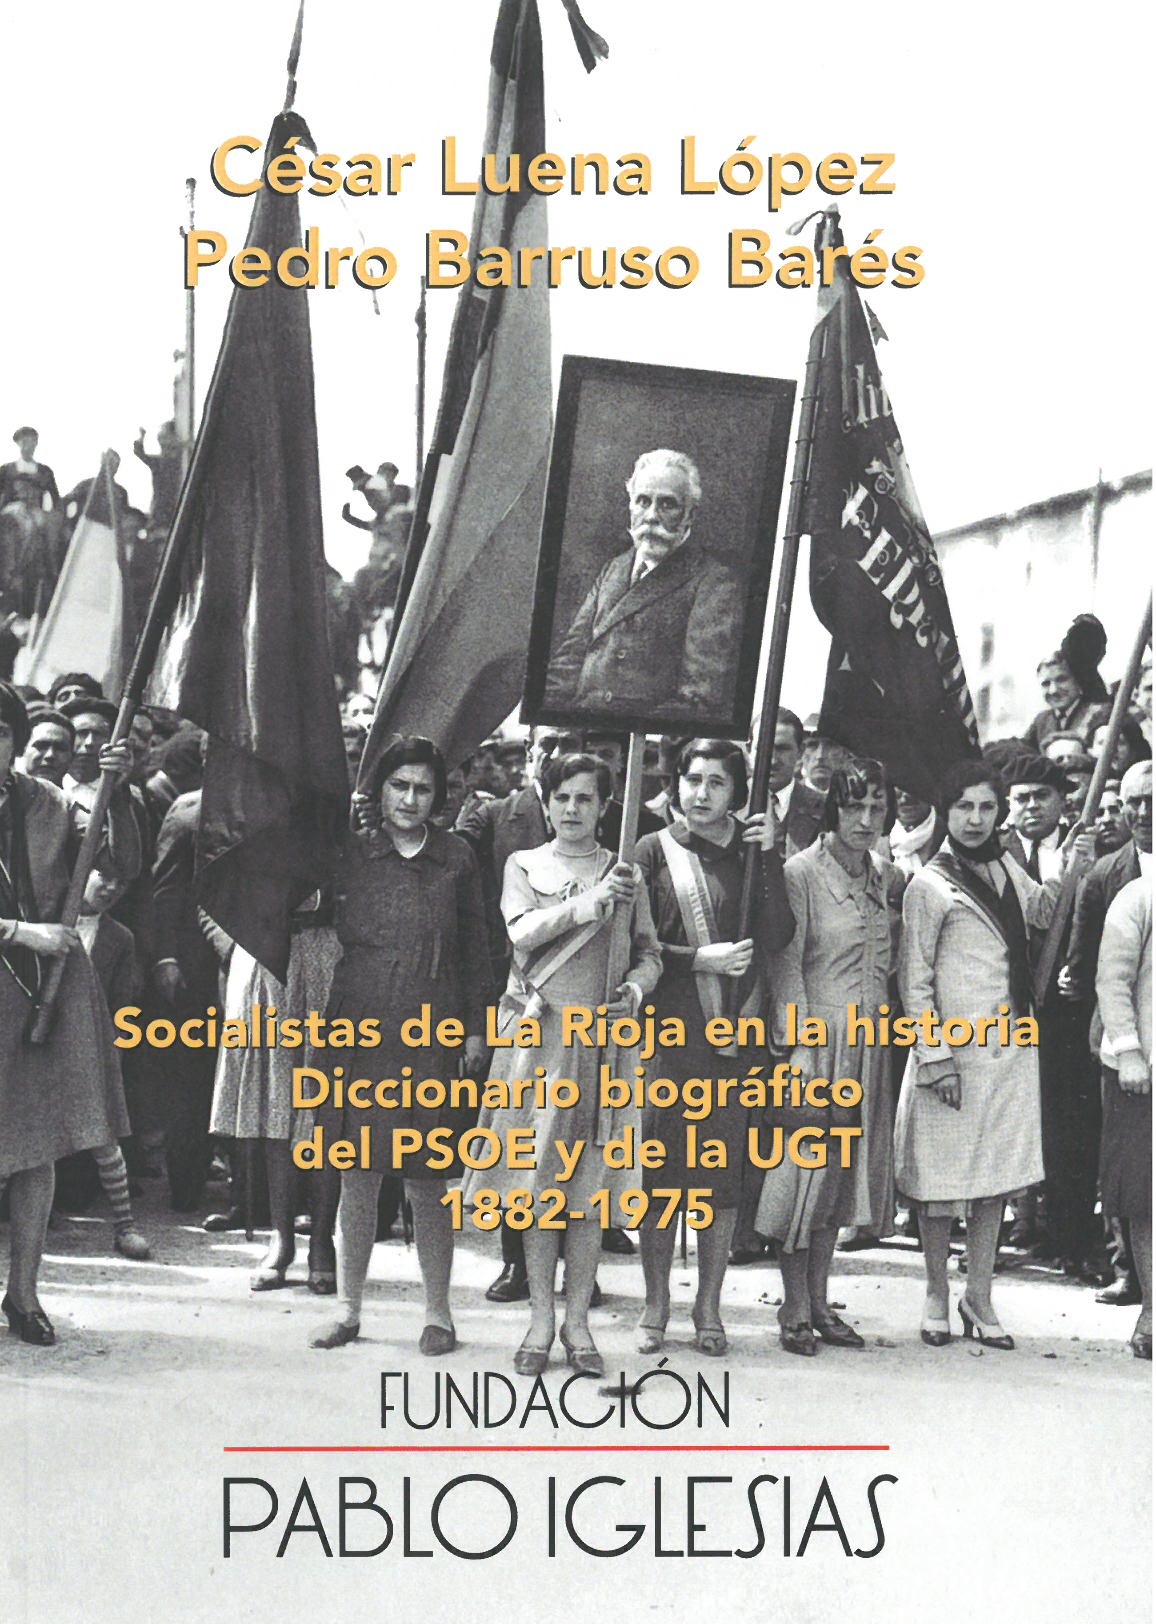 Imagen de portada del libro Socialistas en La Rioja en la historia